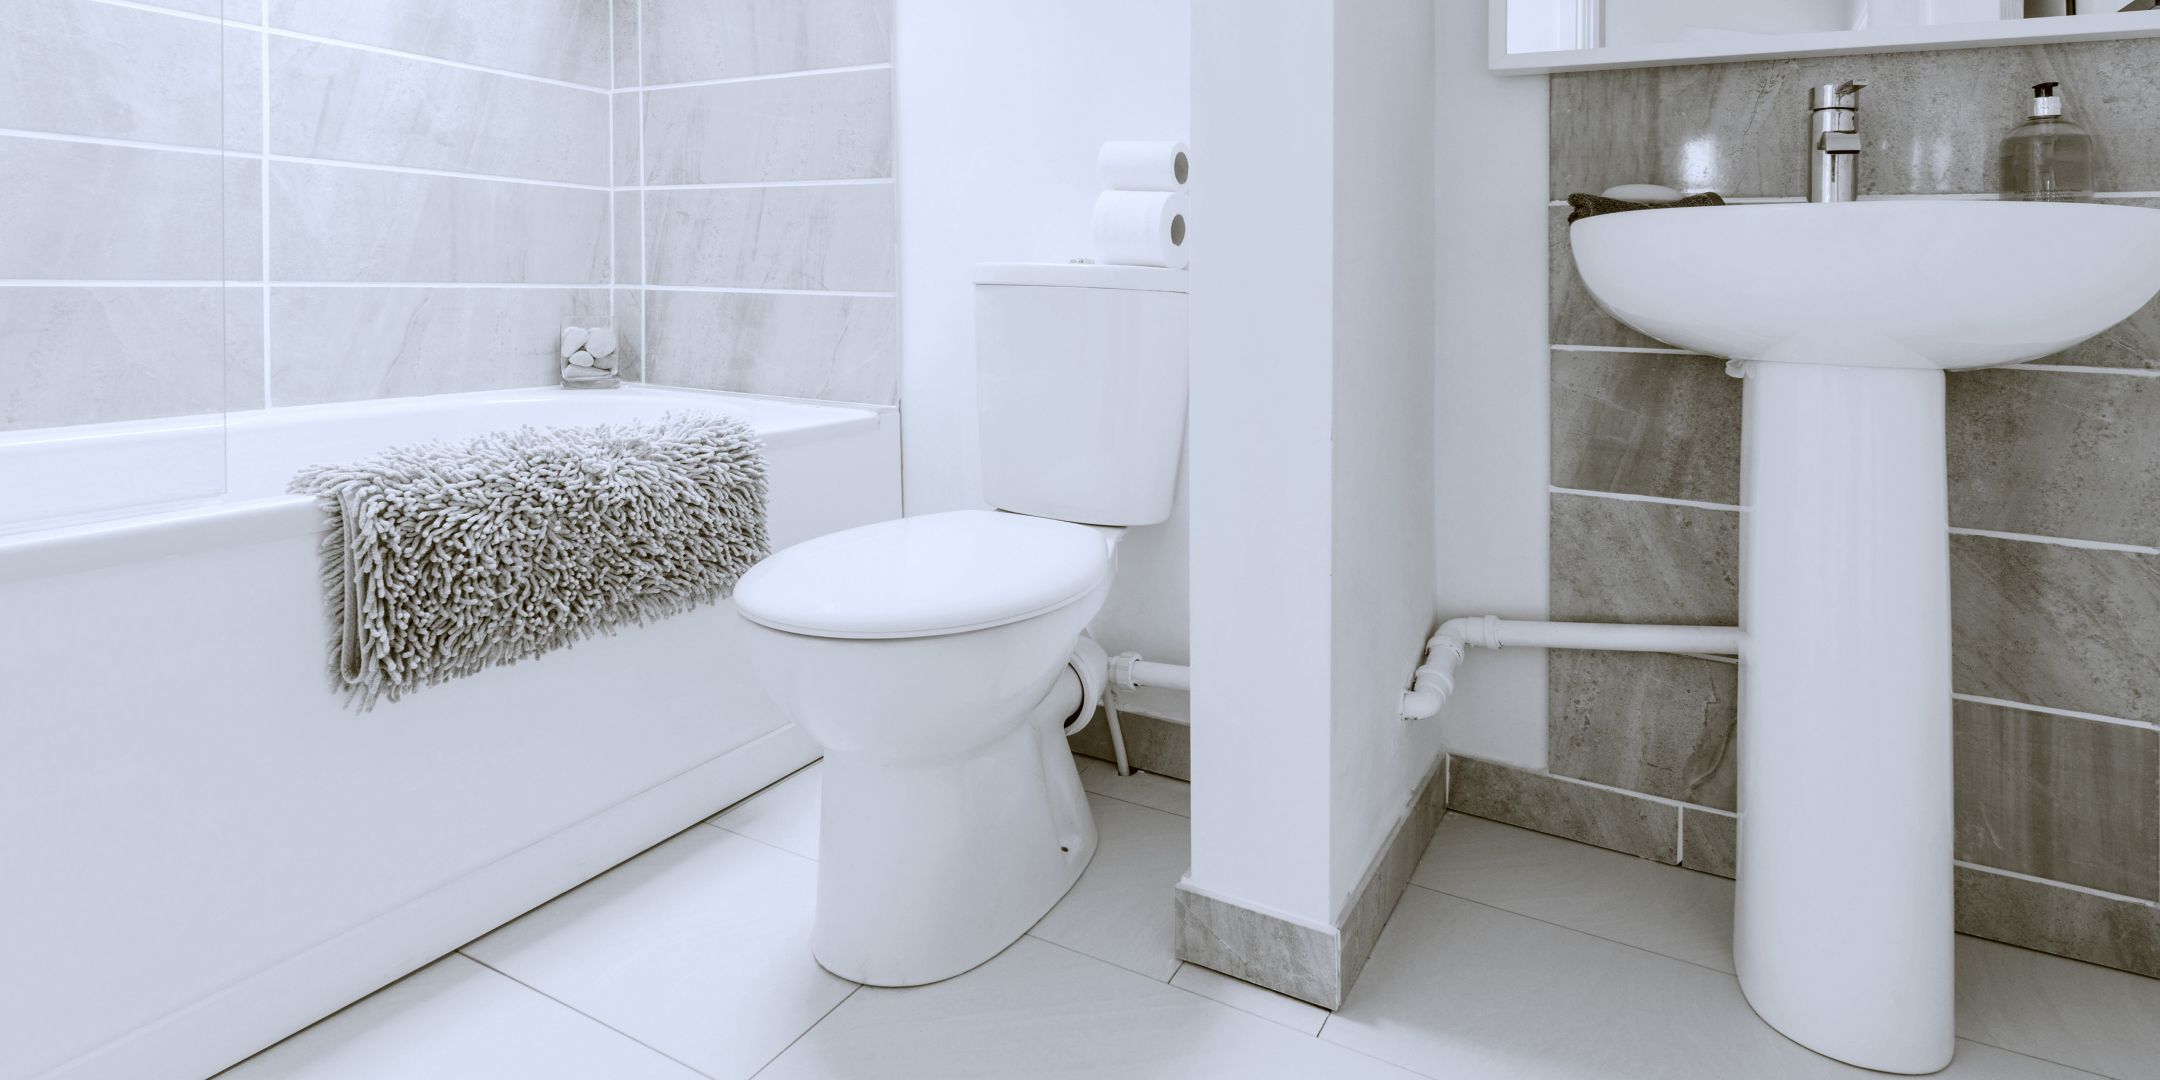 Poptávka na rekonstrukce koupelny a samostatného WC v bytě (Bytová jádra, koupelny) - Blansko